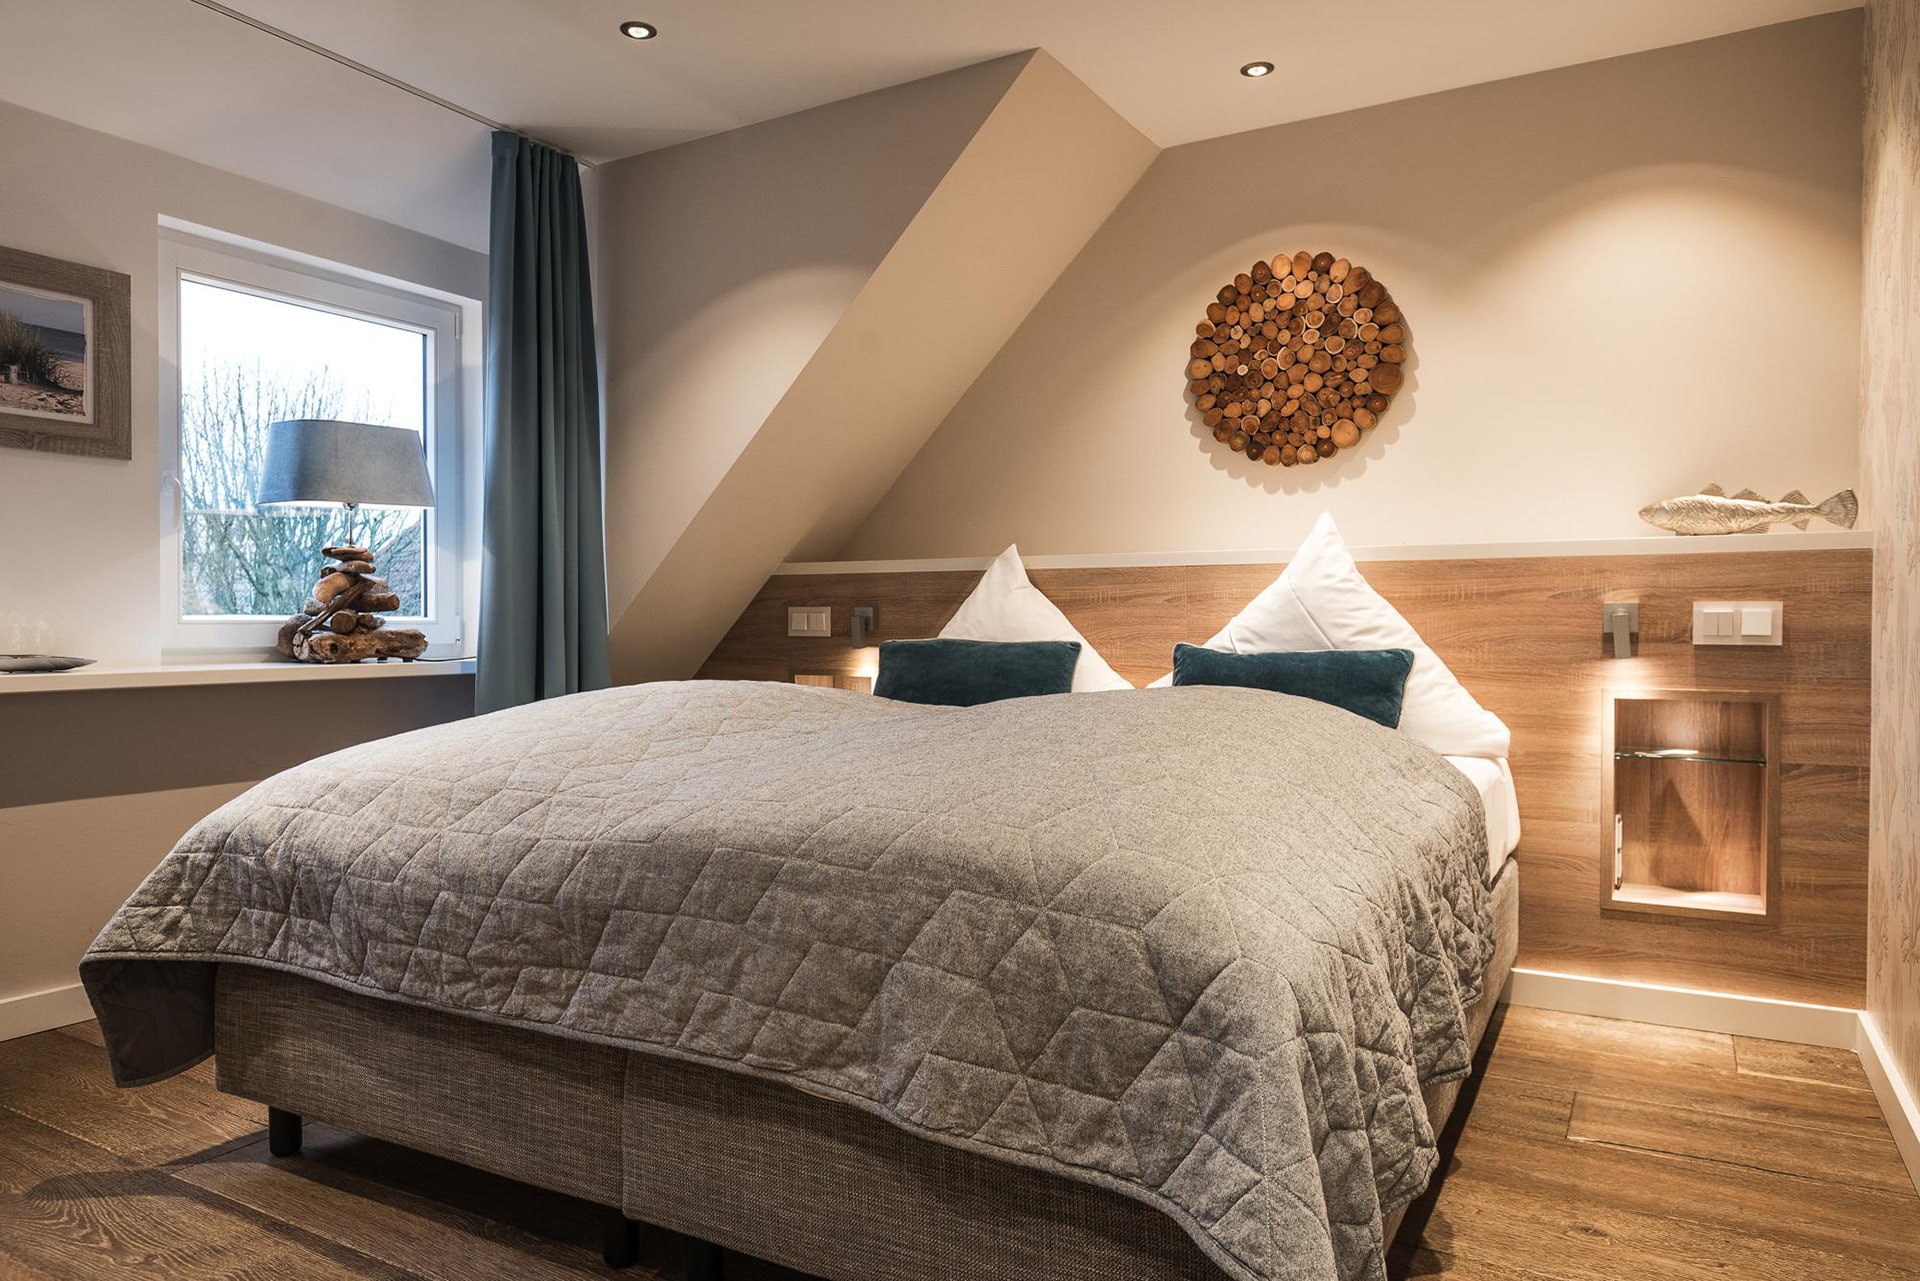 Modern eingerichtetes Doppelzimmer mit Doppelbett und Holzboden im Hotel Landhaus Sylter Hahn in Westerland auf Sylt.